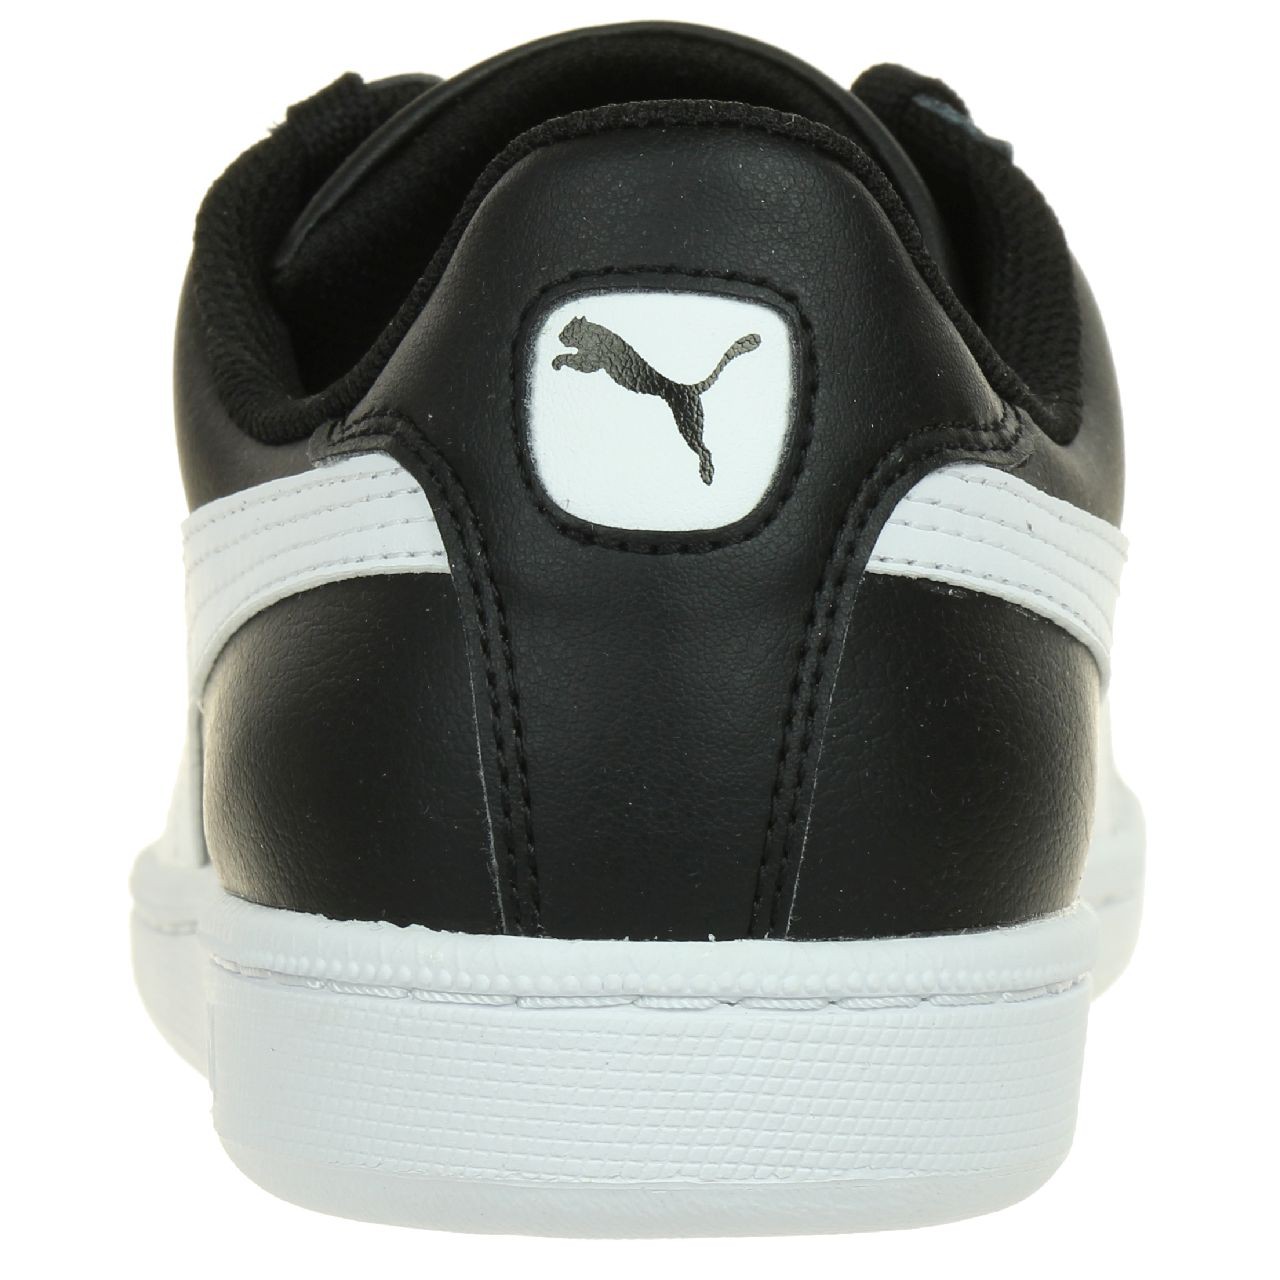 Puma Smash L Herren Sneaker Schuhe Leder schwarz 356722 14